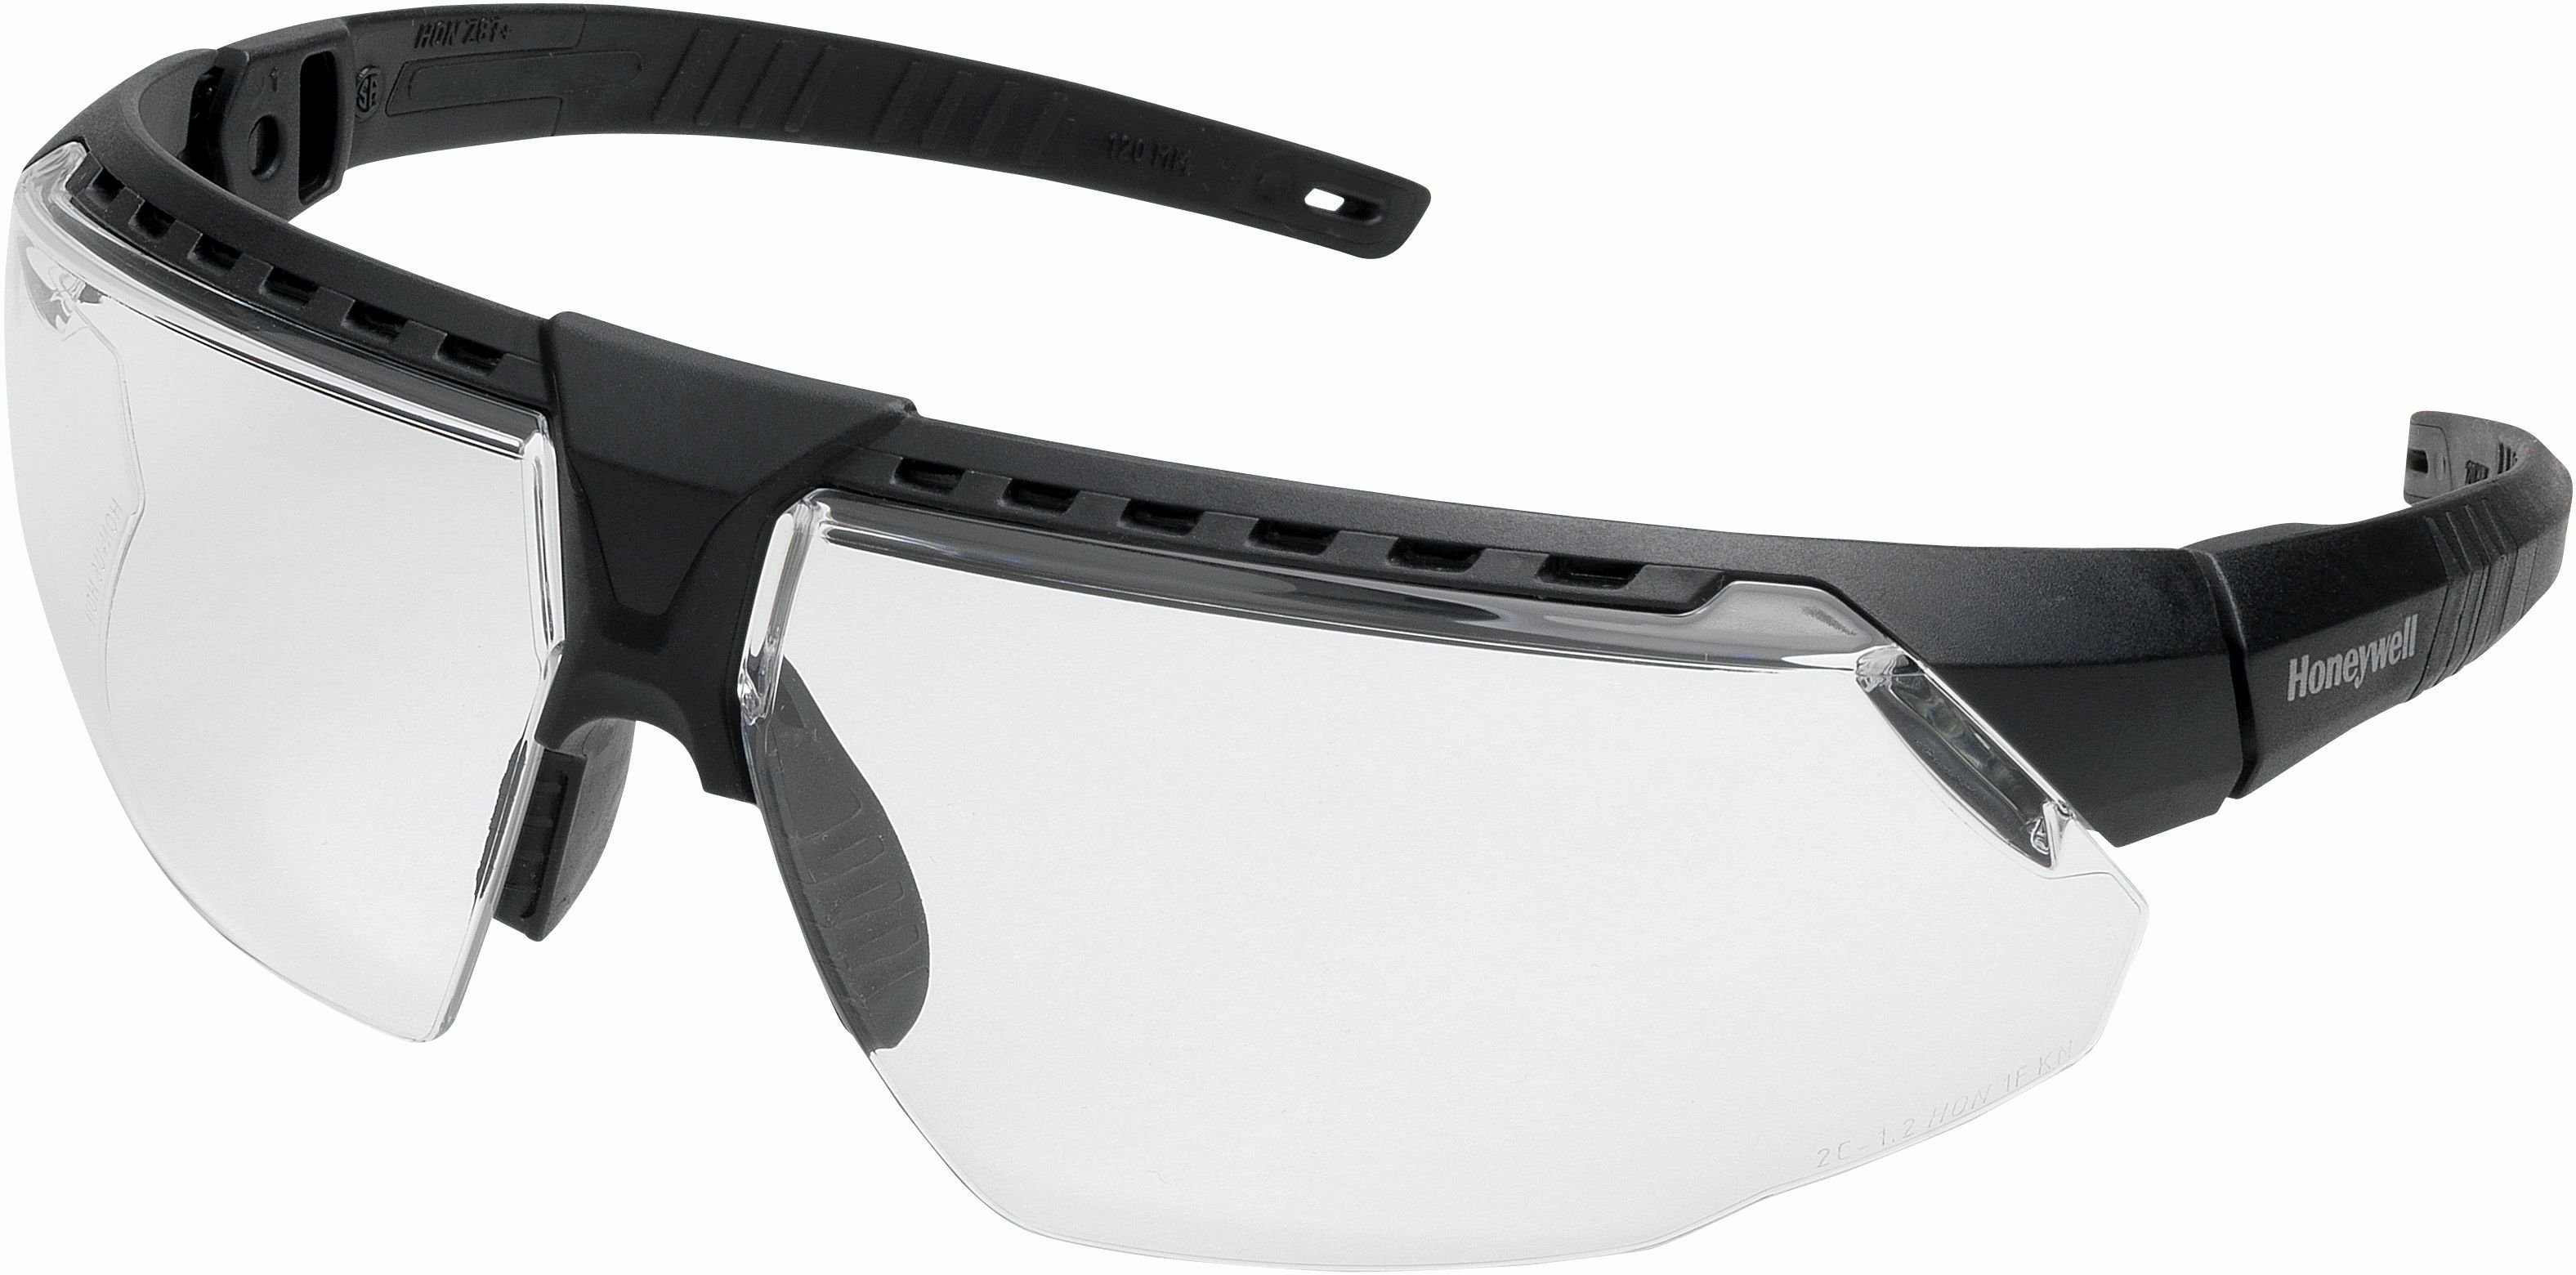 Avatar™, HS, Schutzbrille schwarz klar, PC, Honeywell Notizbuch